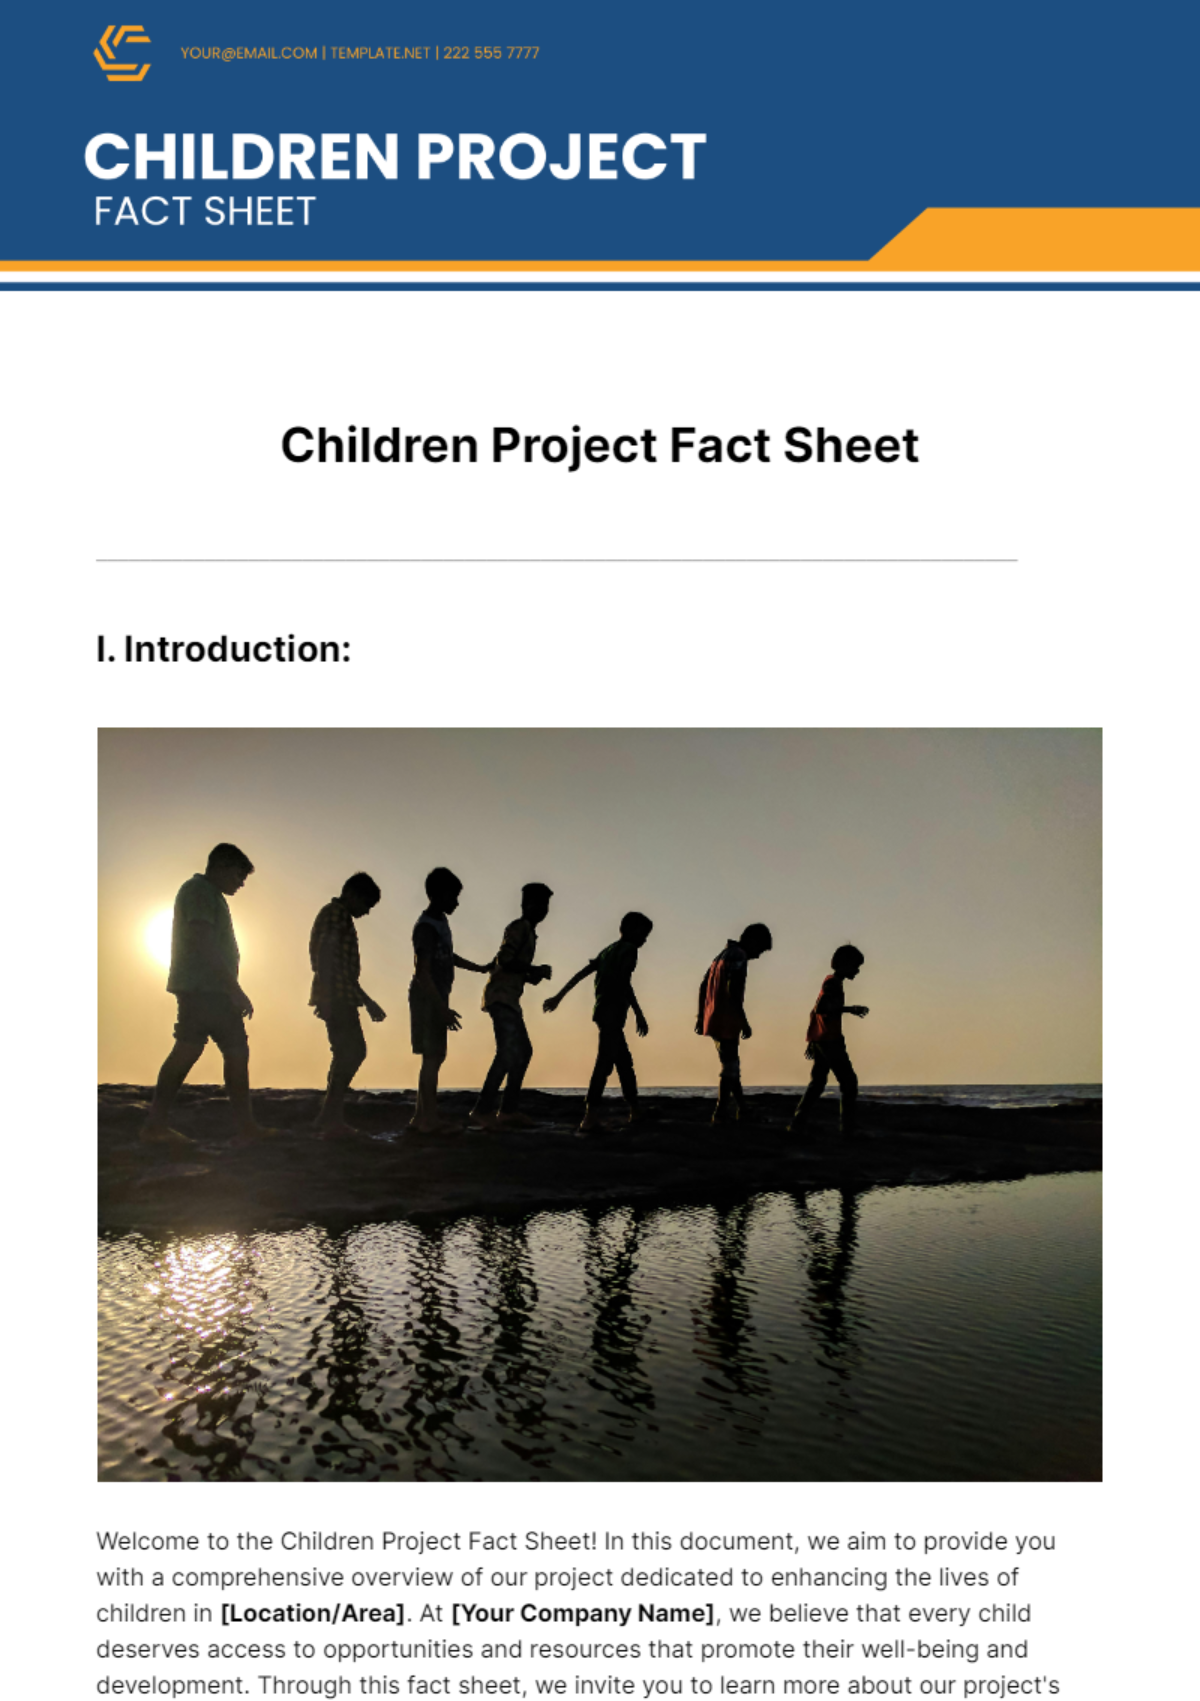 Children Project Fact Sheet Template